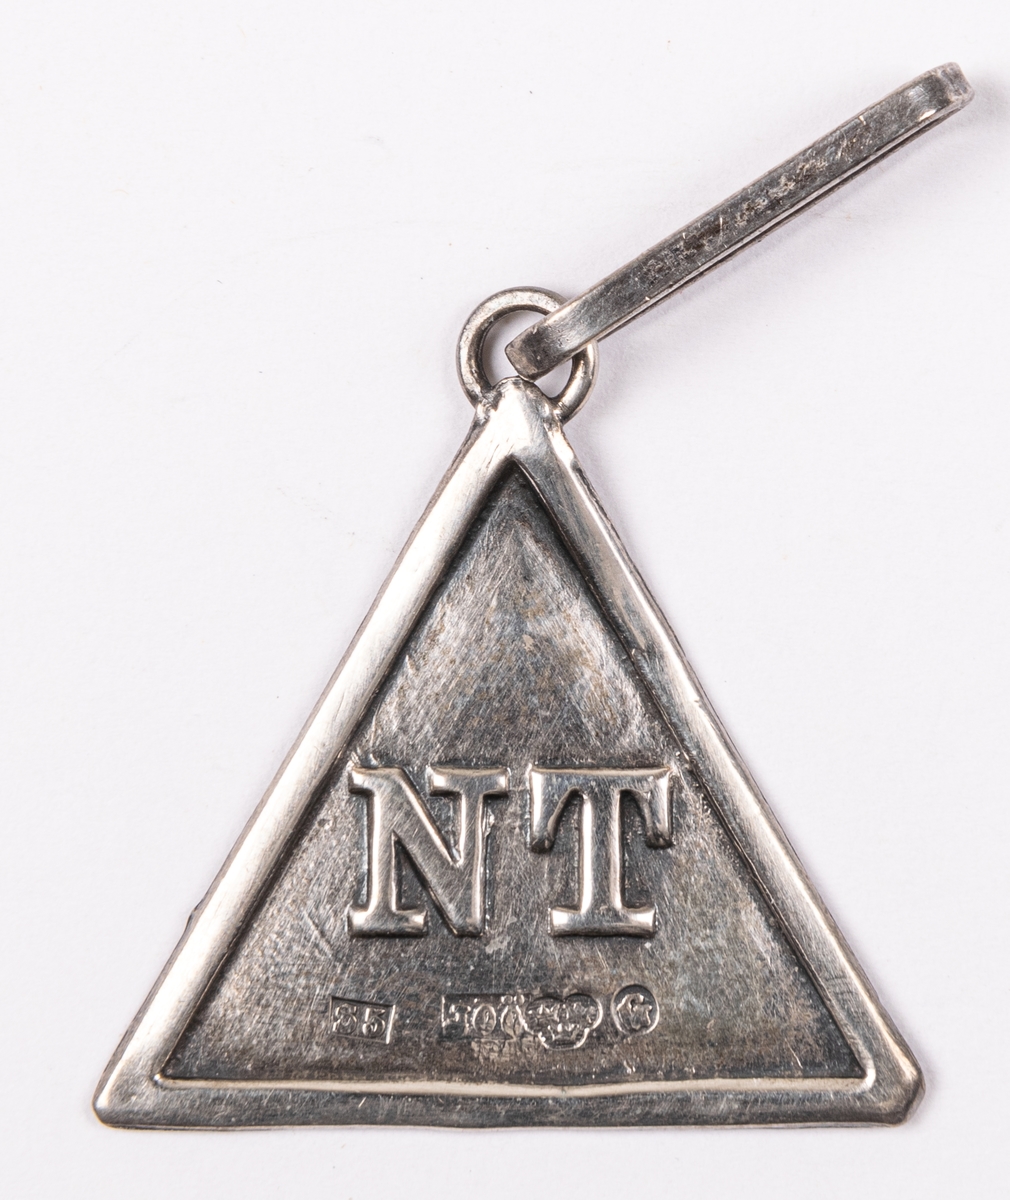 Ordensdekoration i silver, från Sällskapet NT, Gävle.
Triangelformat hänge med bokstäverna N T, samt silverstämplar:
S5 JOÖ kontrollstämpel G.